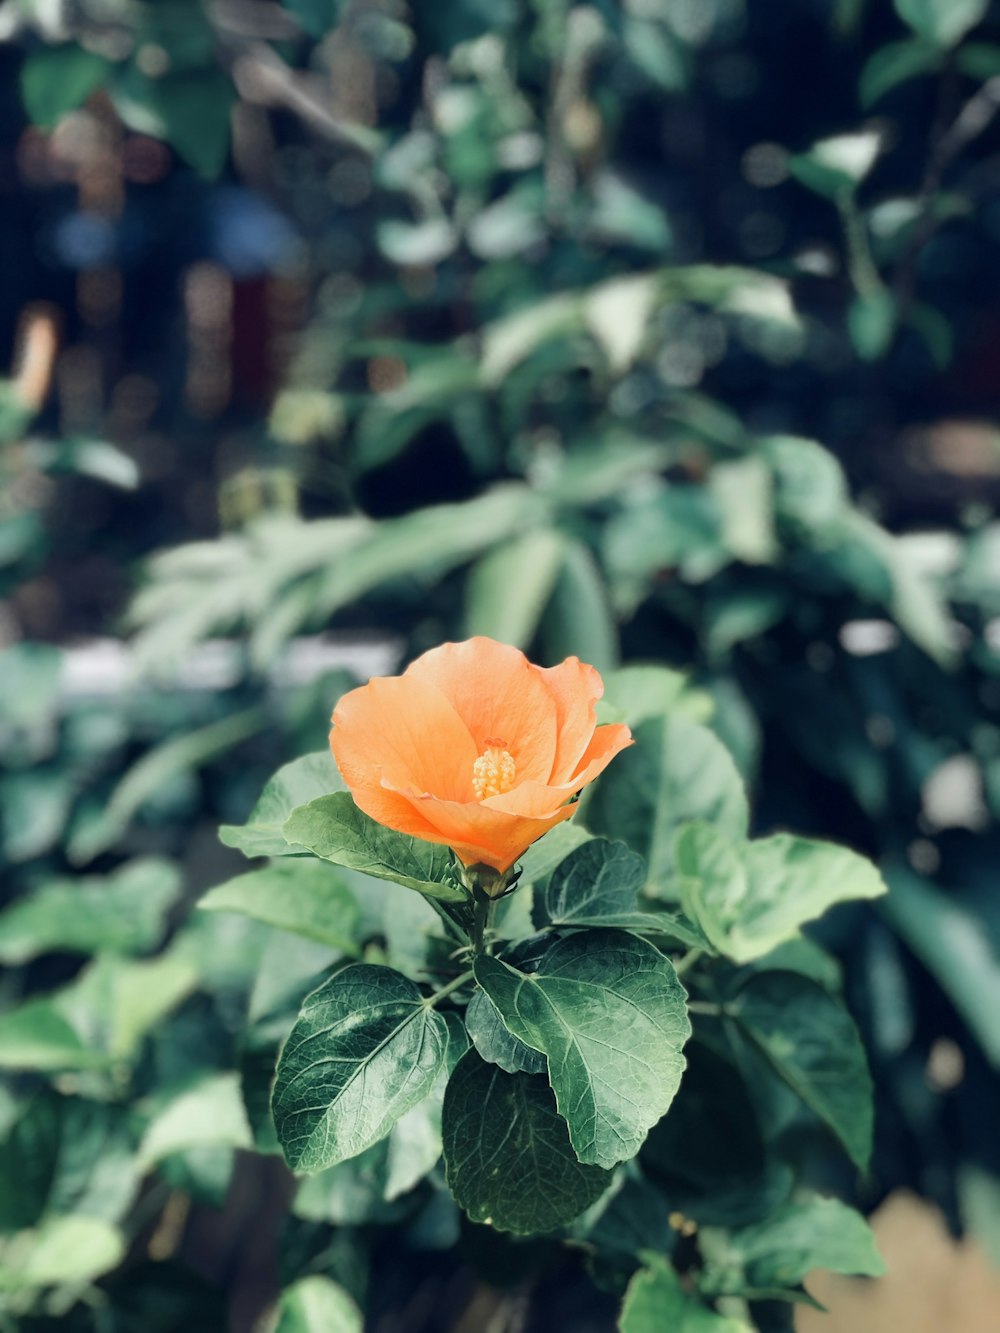 Fotografia de foco raso da flor de laranjeira